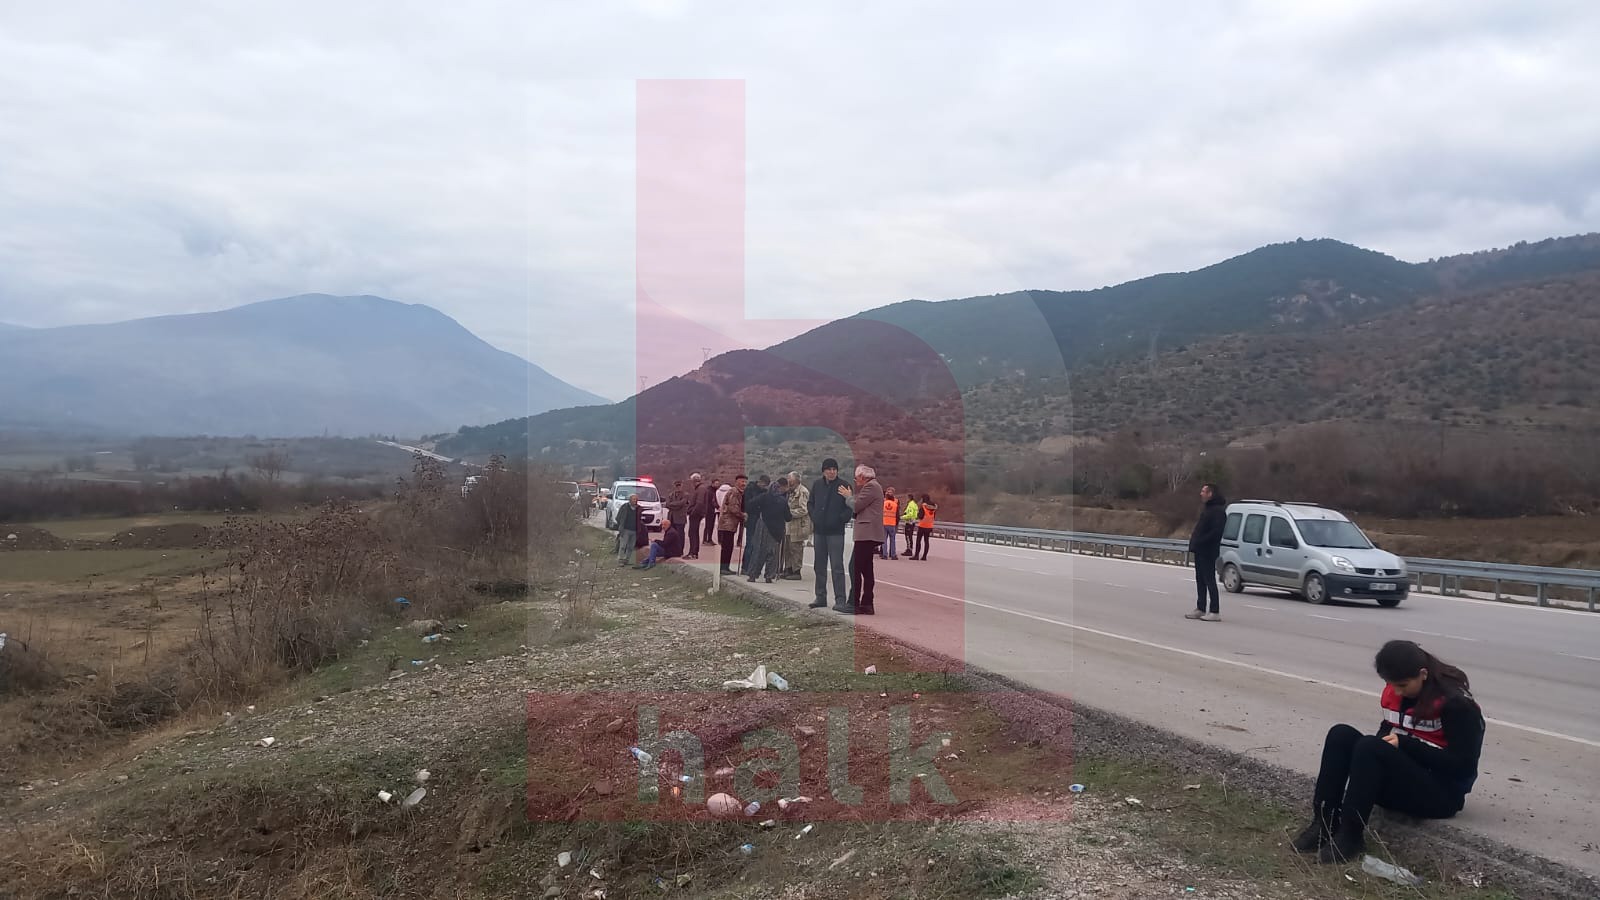 Amasya Taşova'da iş makinaları araziye tekrar girdi: Canımız yanıyor